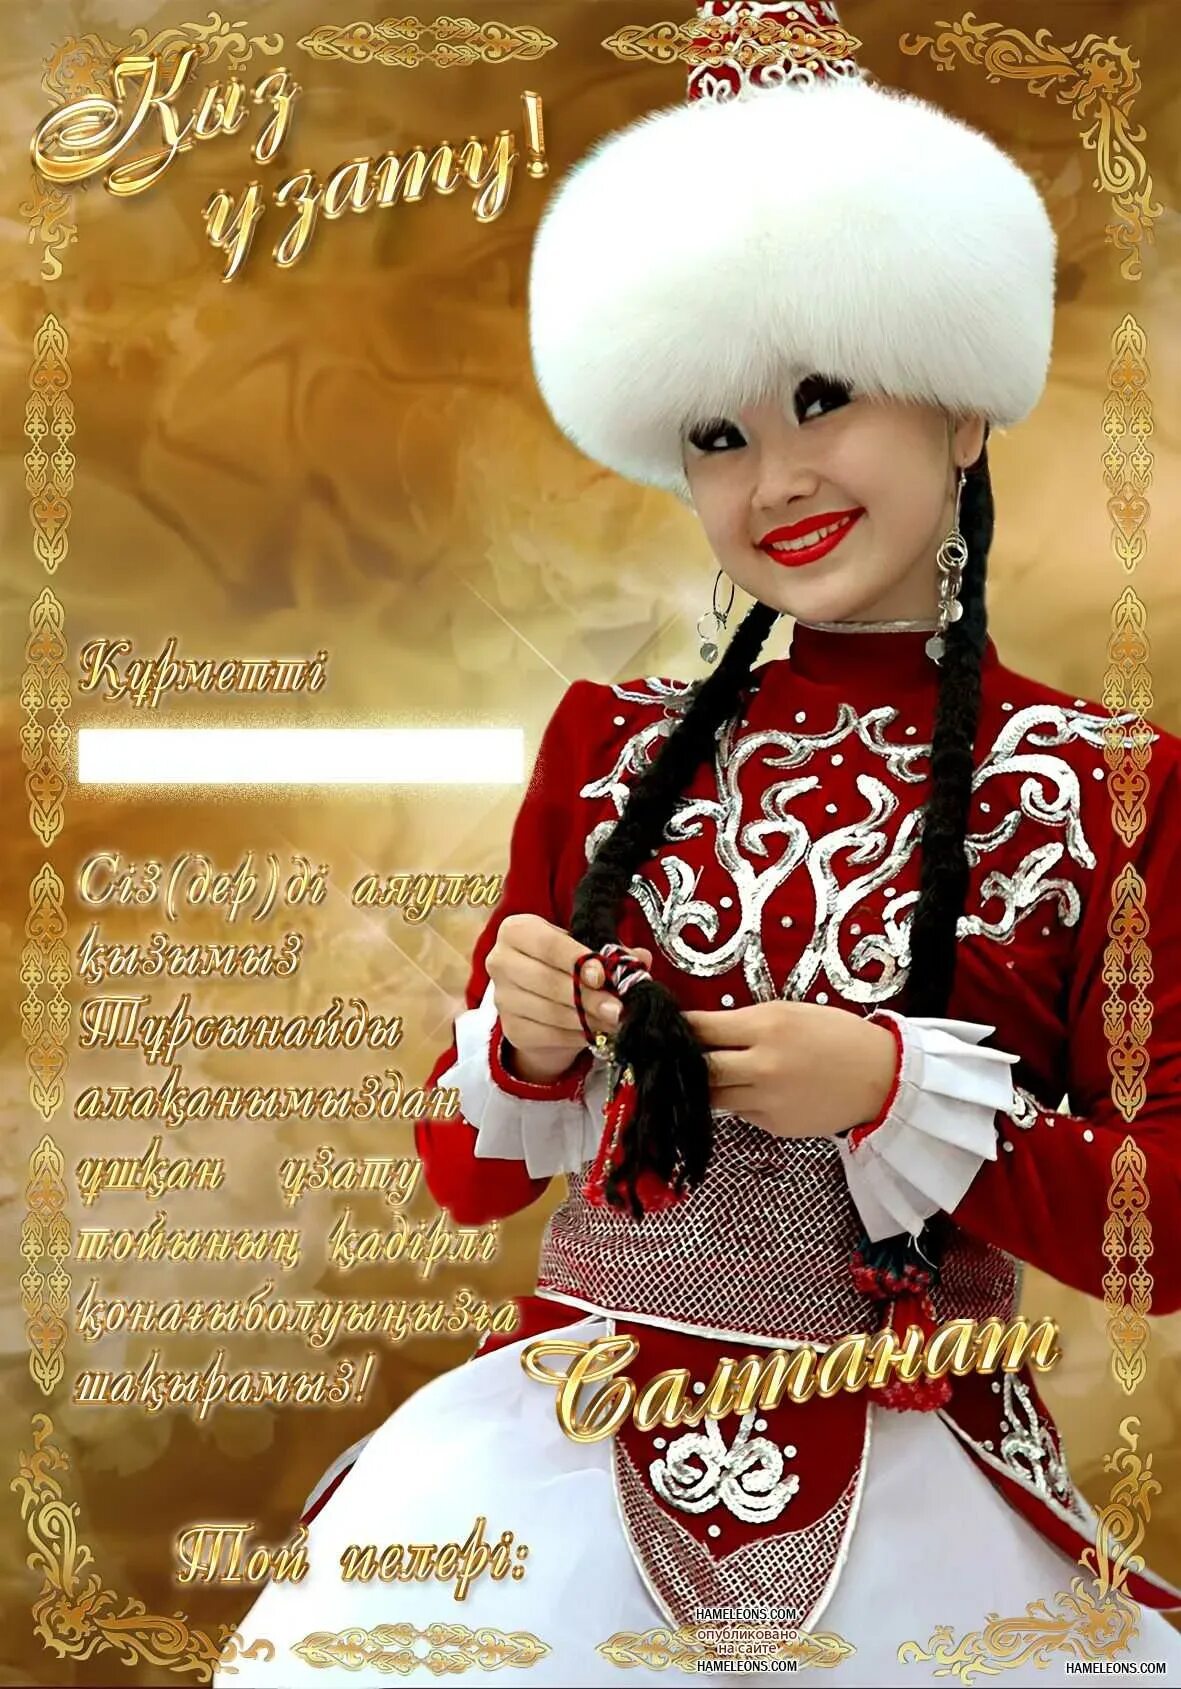 Поздравление на казахском языке красивое. Поздравление казаха с днем рождения. Казахские открытки с днем рождения. Открытки с юбилеем на казахском языке. Казах поздравляет с днем рождения.